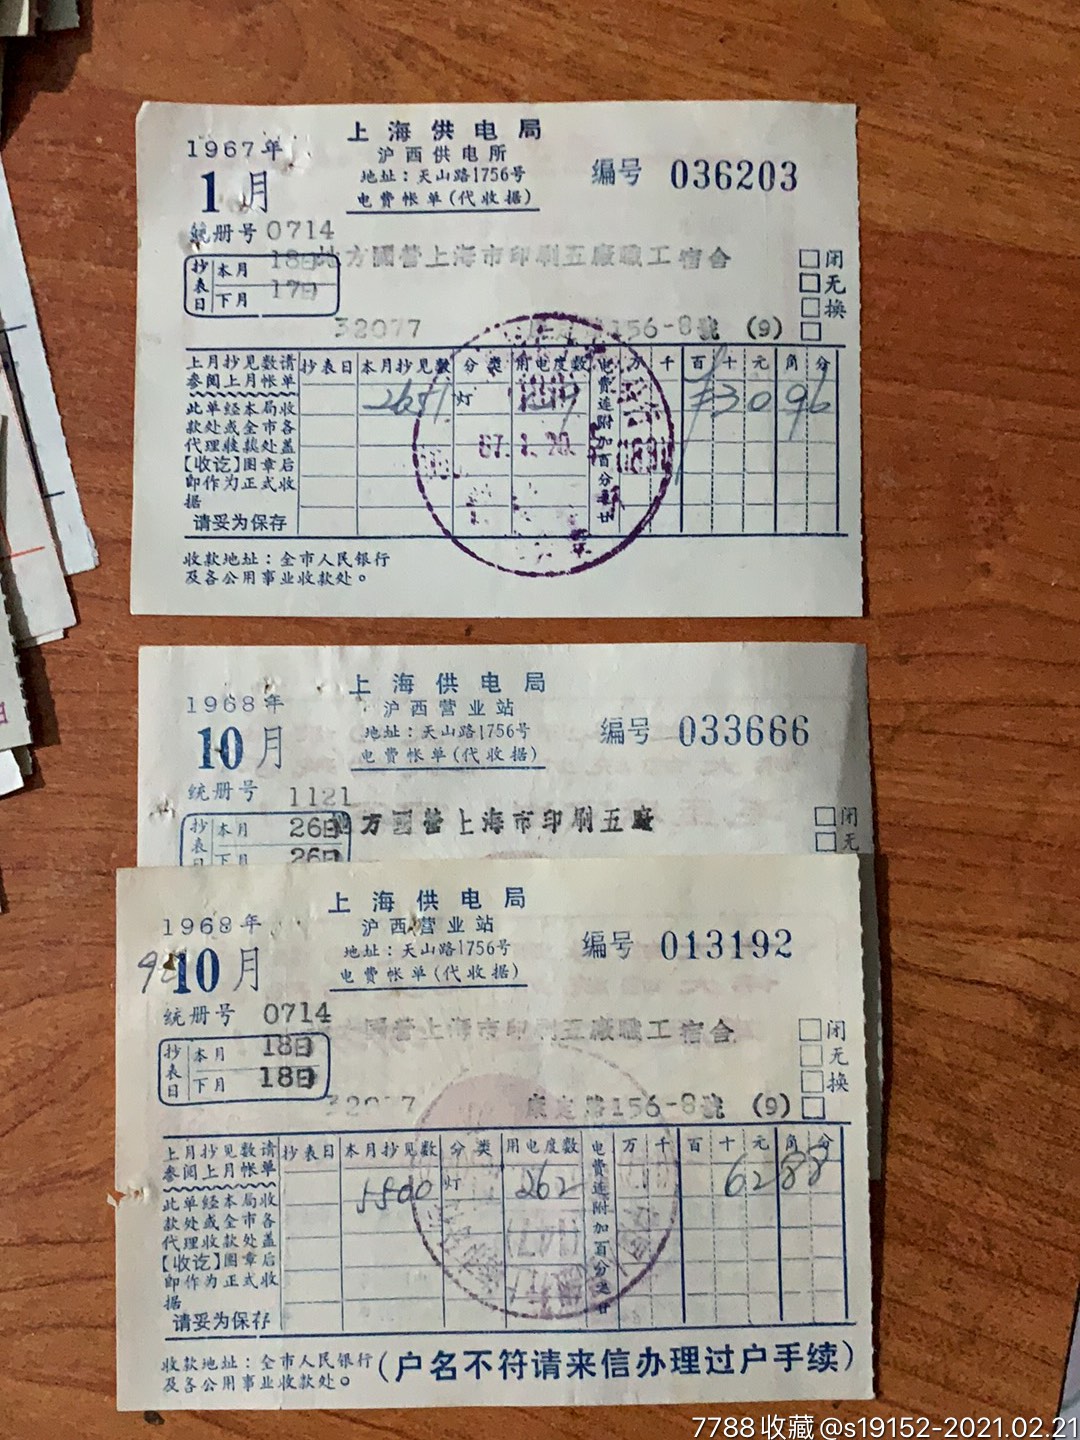 上海电业局电费清单